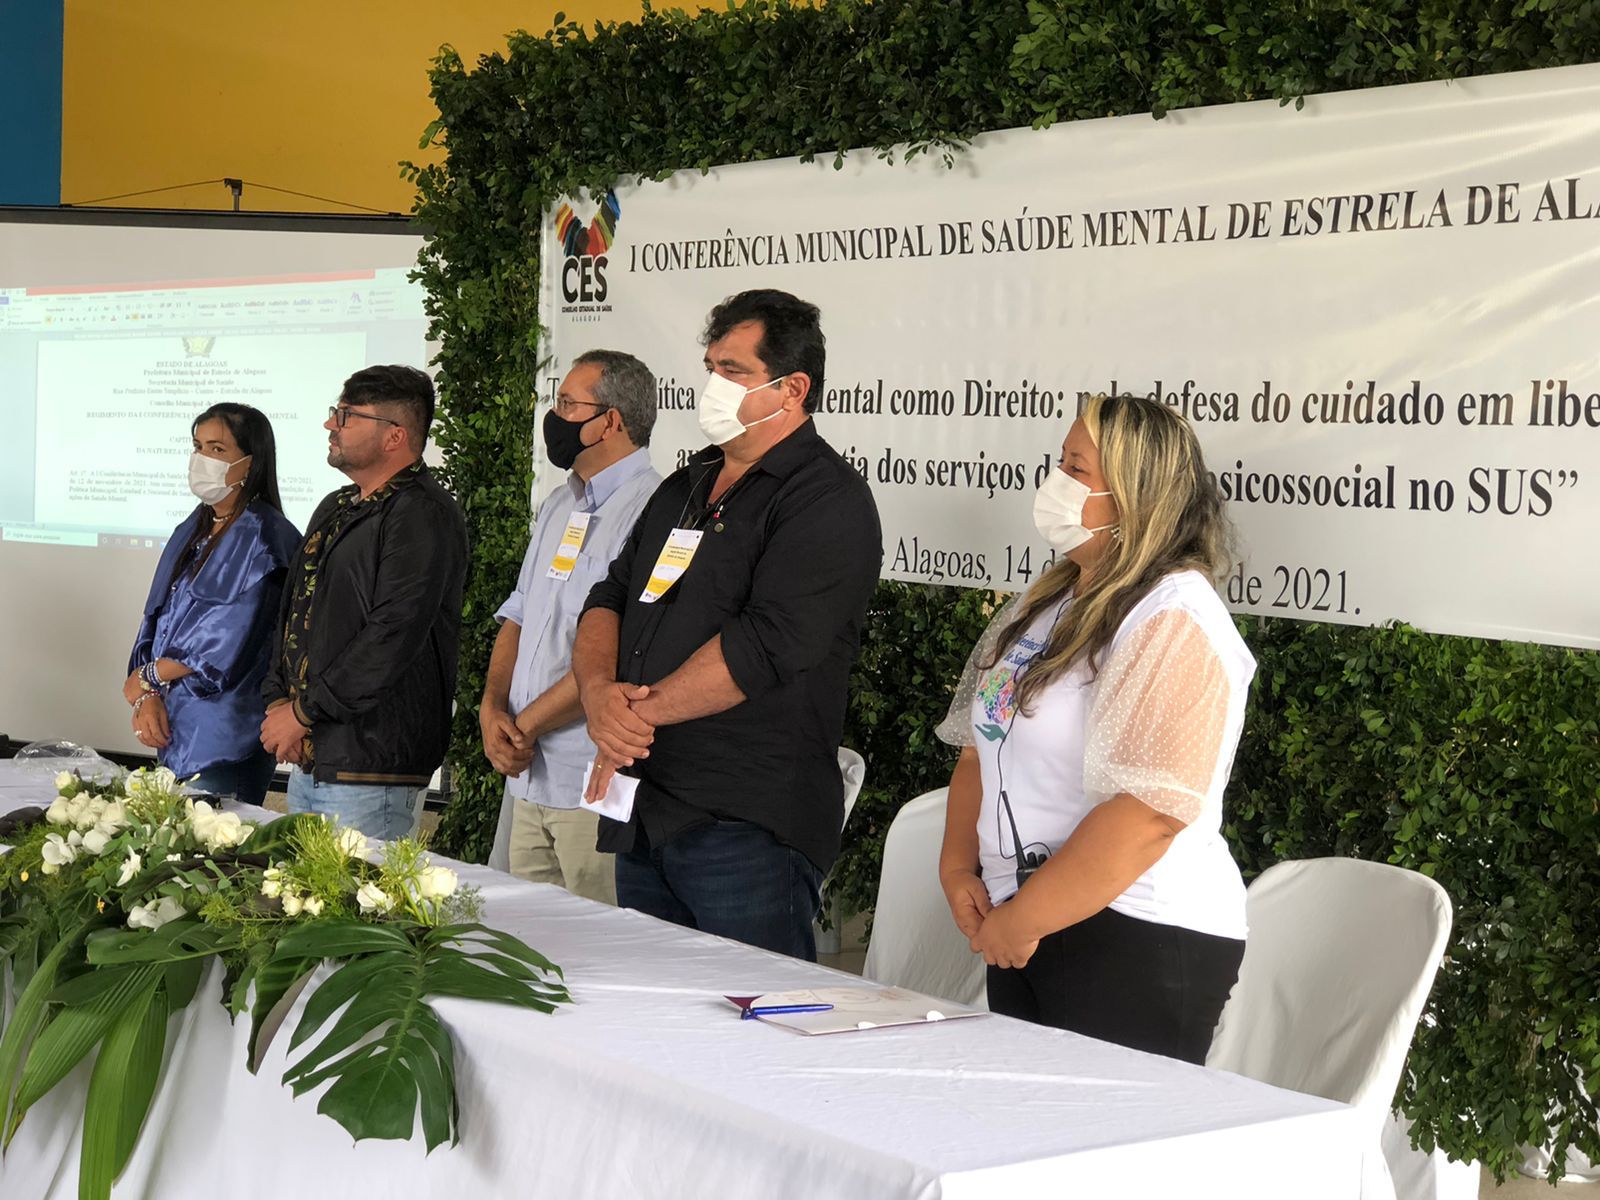 I Conferência Municipal de Saúde Mental de Estrela de Alagoas